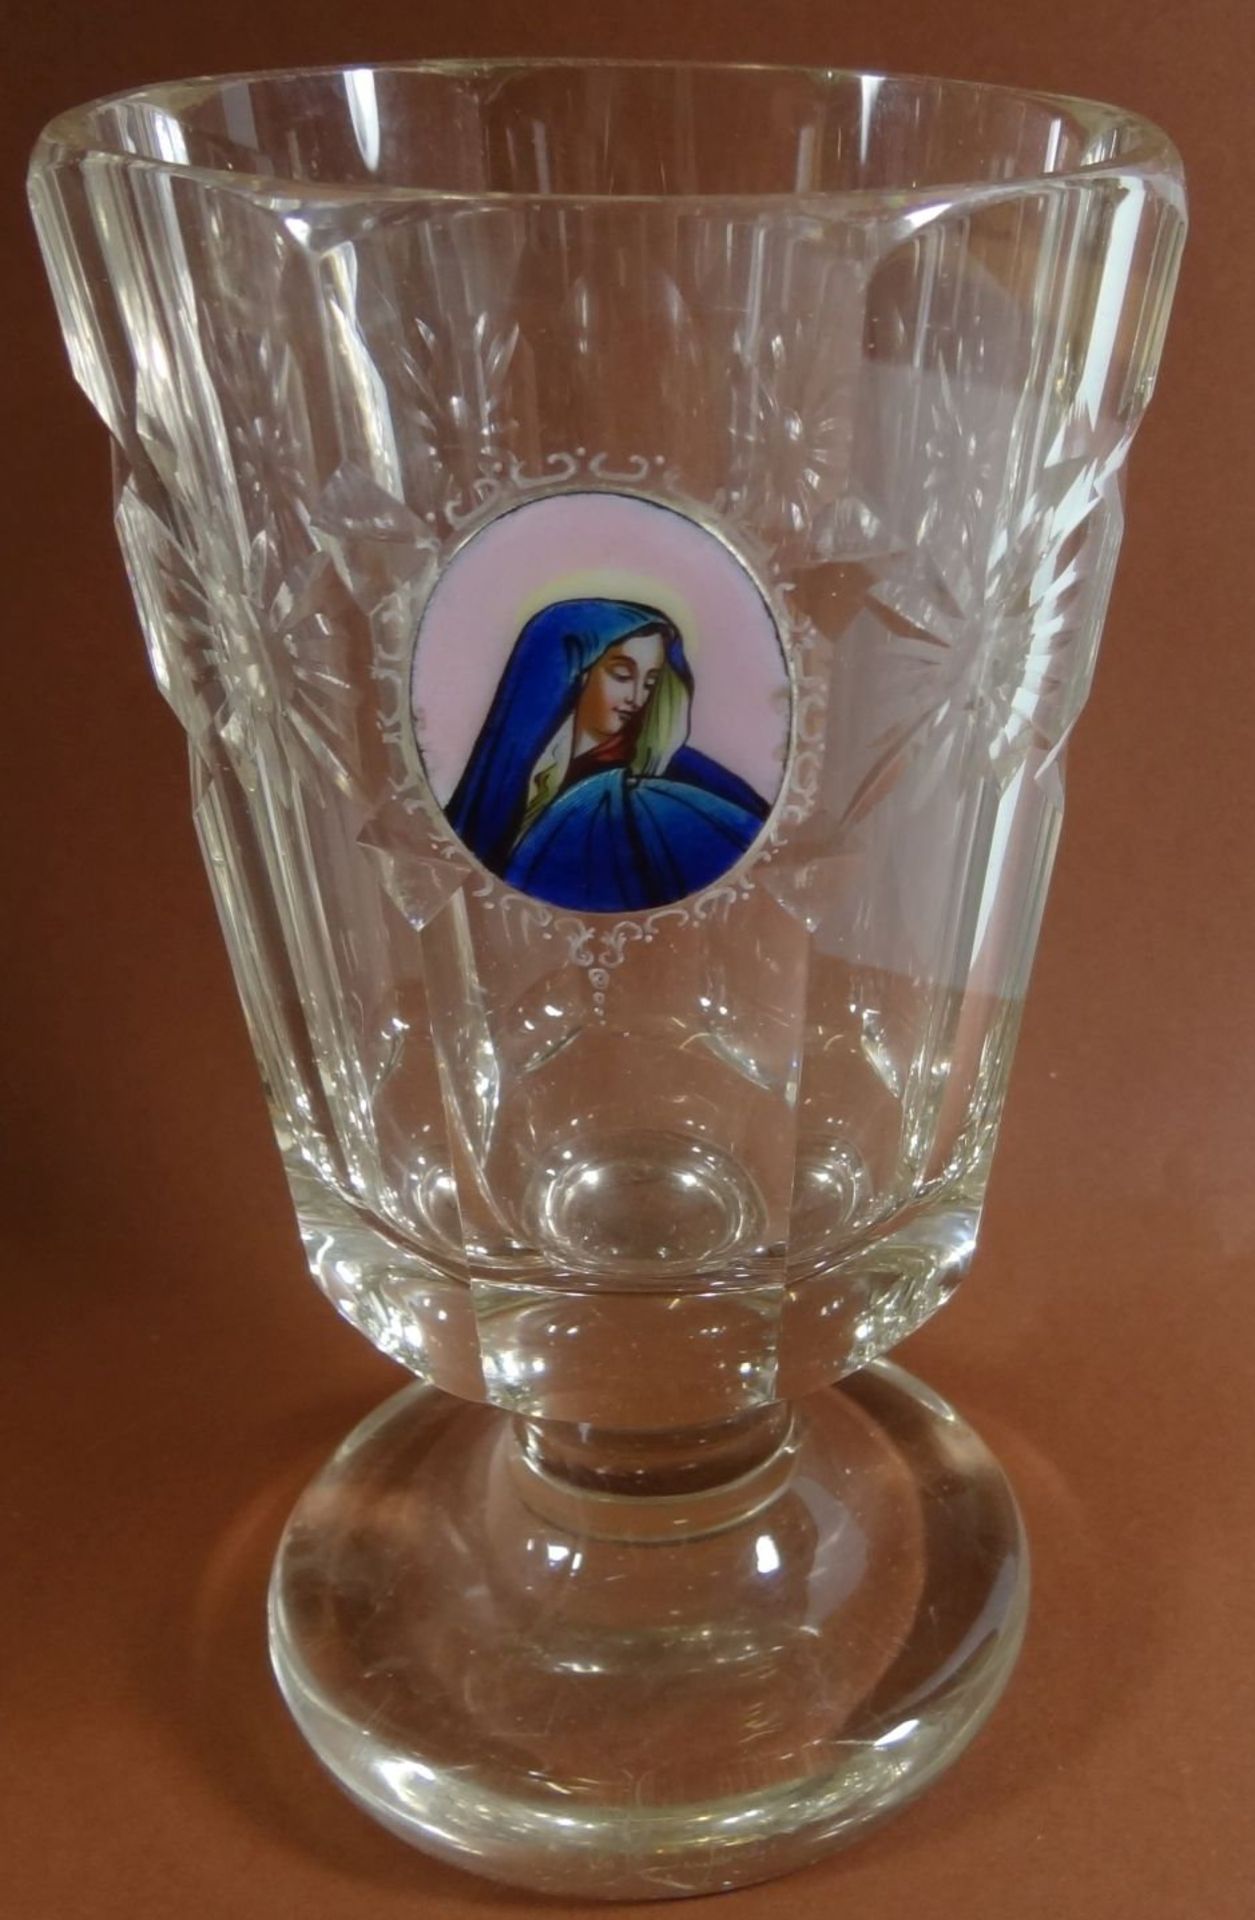 Pokalglas mit Mutter Gottes in Medaillon, beschliffen, rückseitig ungarisch beschriftet, H-16 cm,